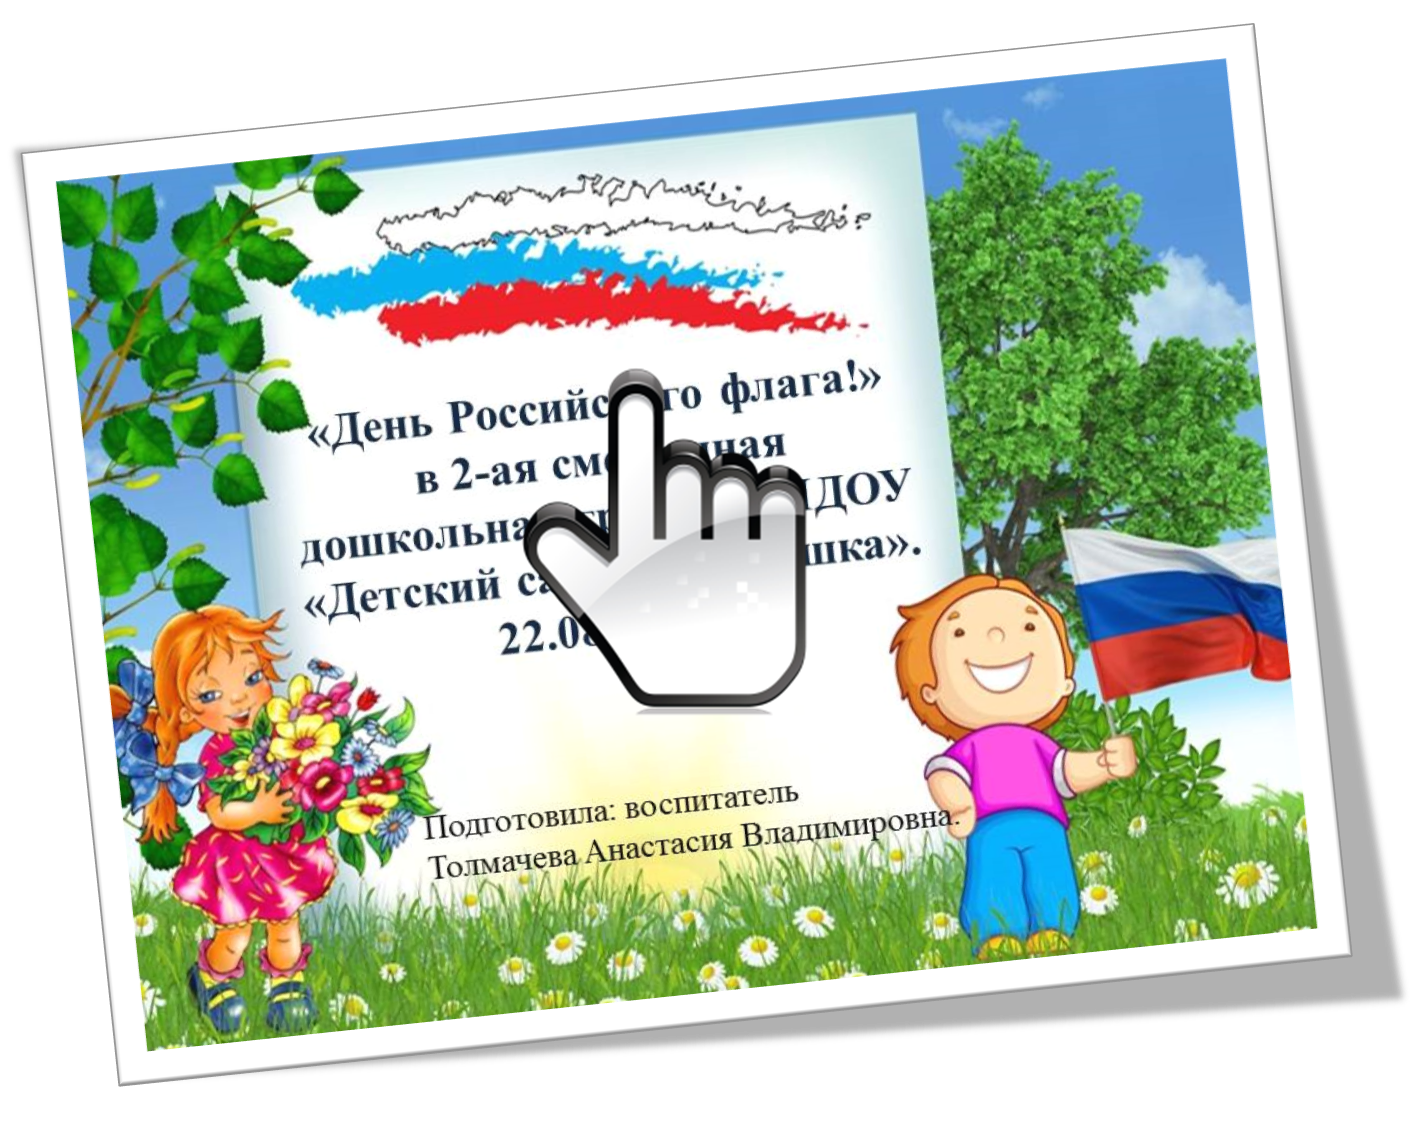 «День Российского флага!»